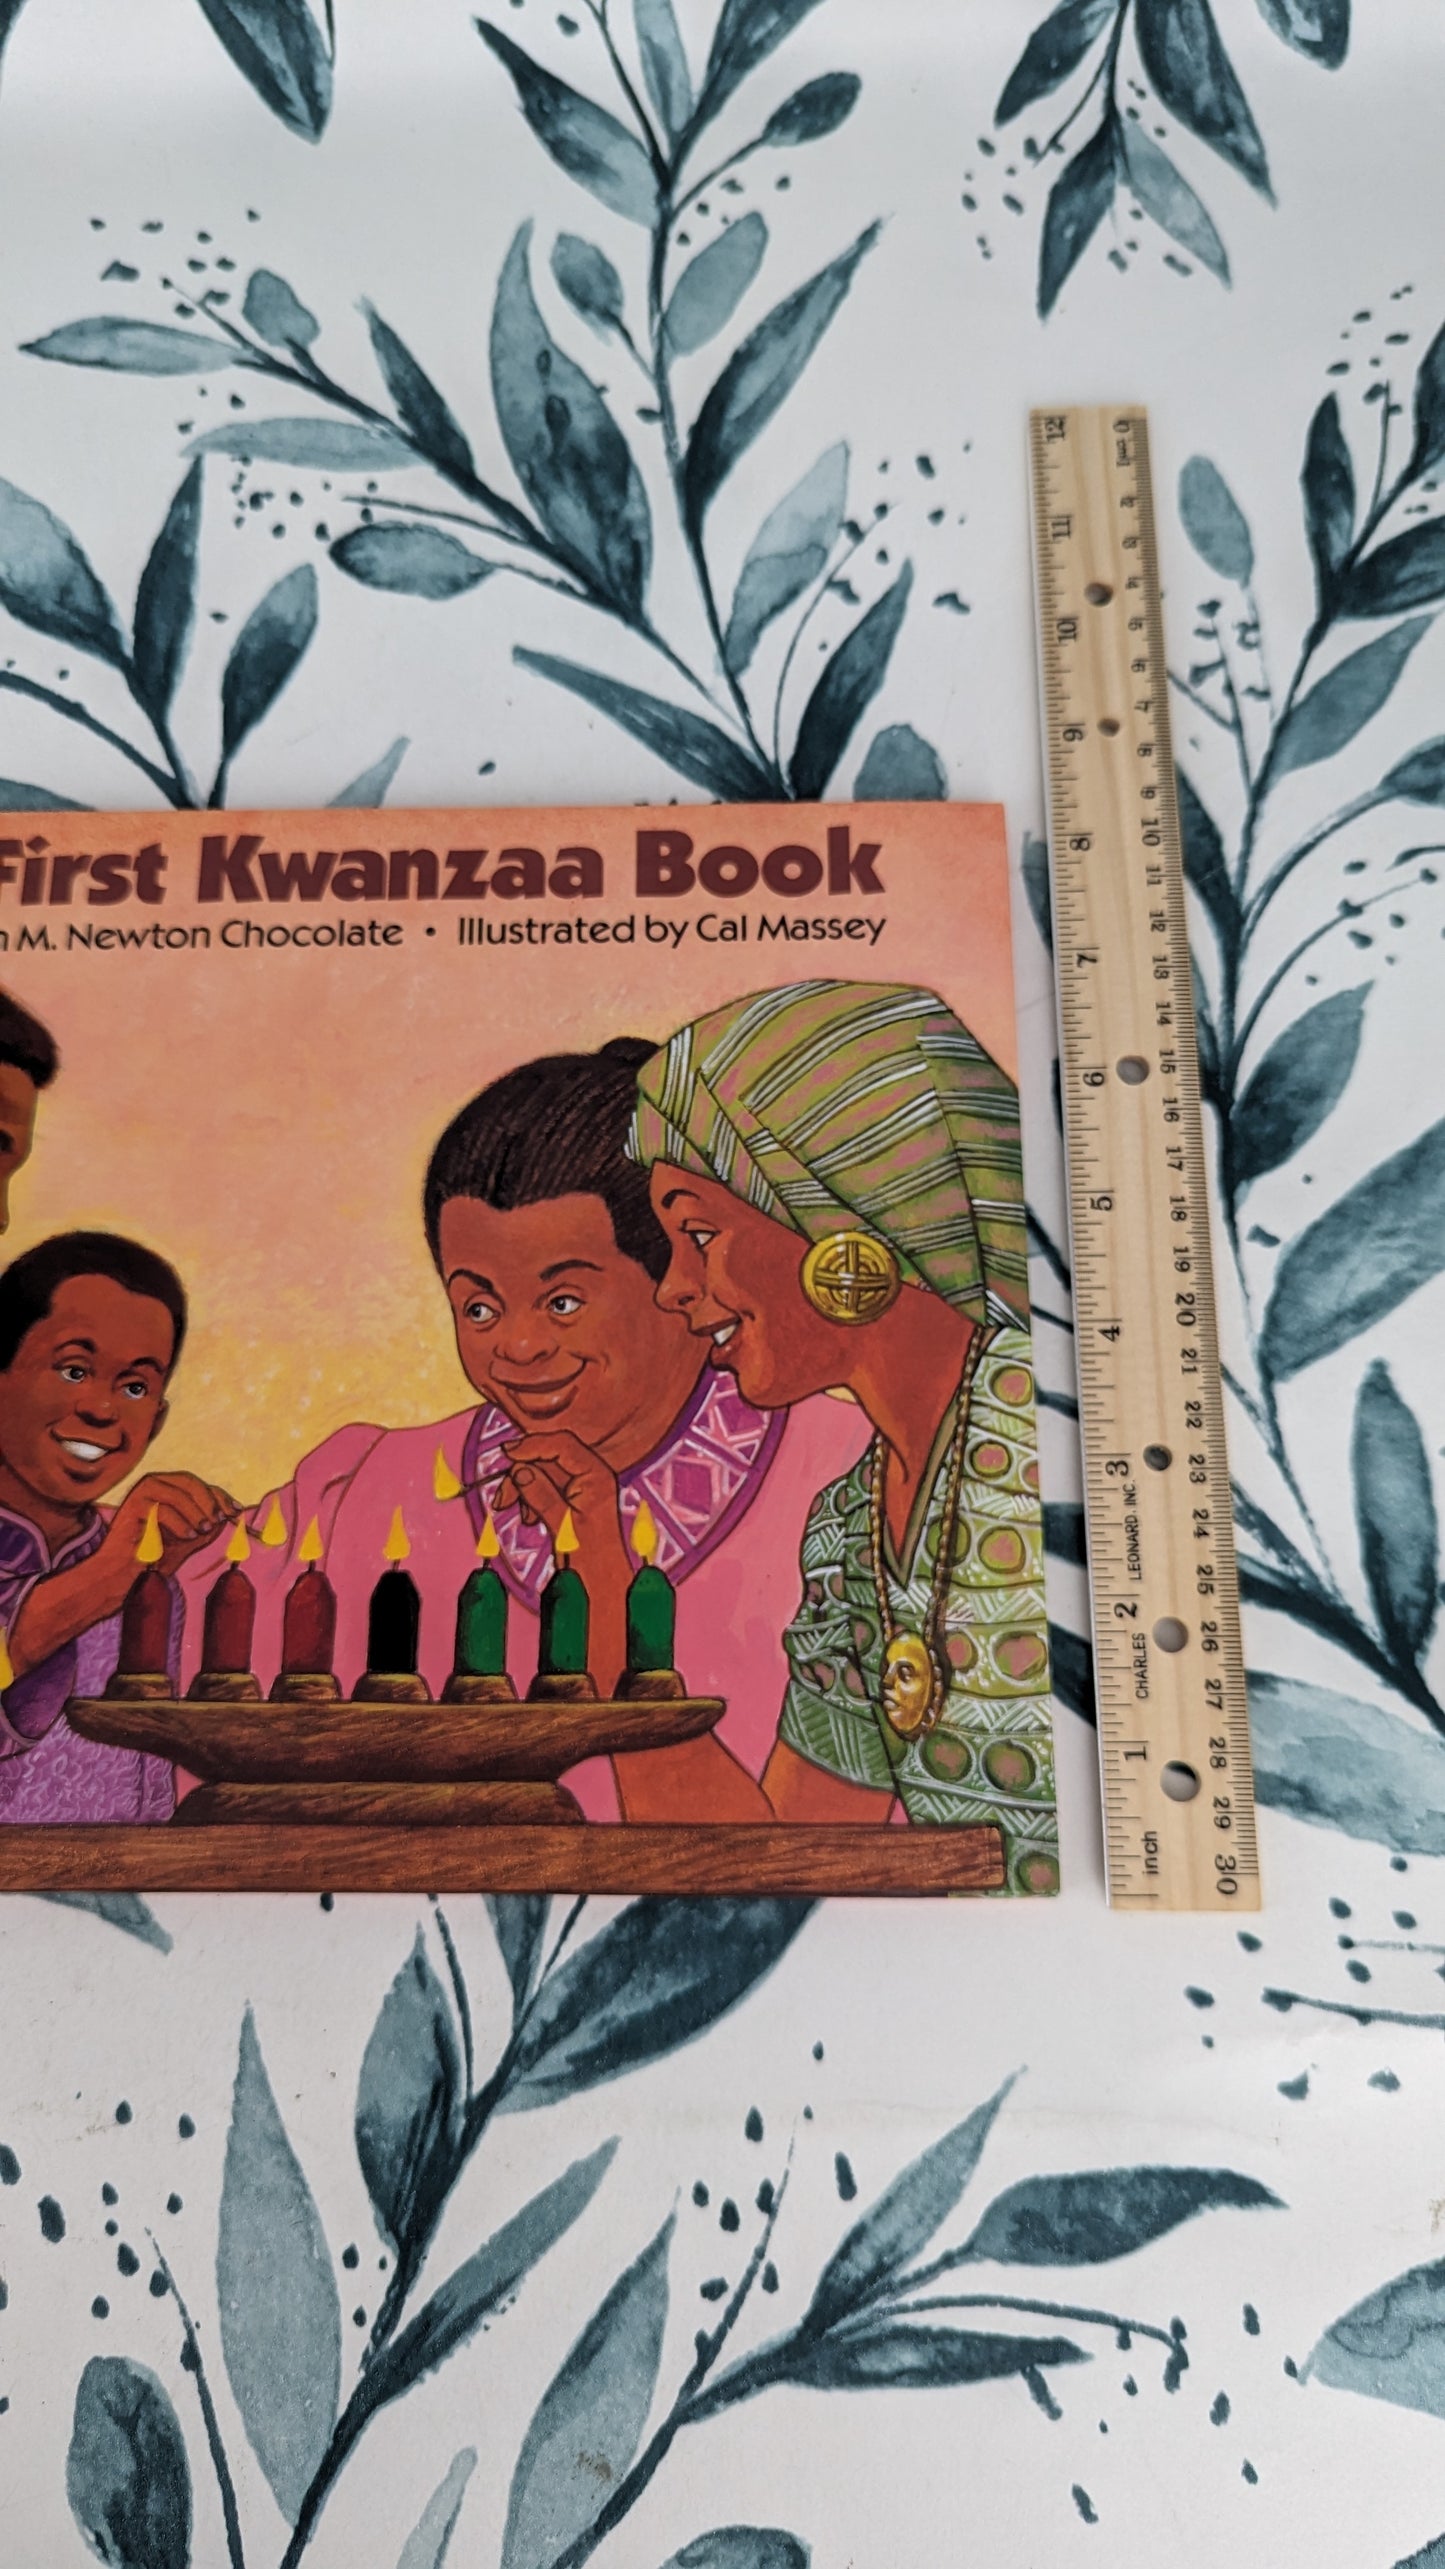 My First Kwanzaa Book